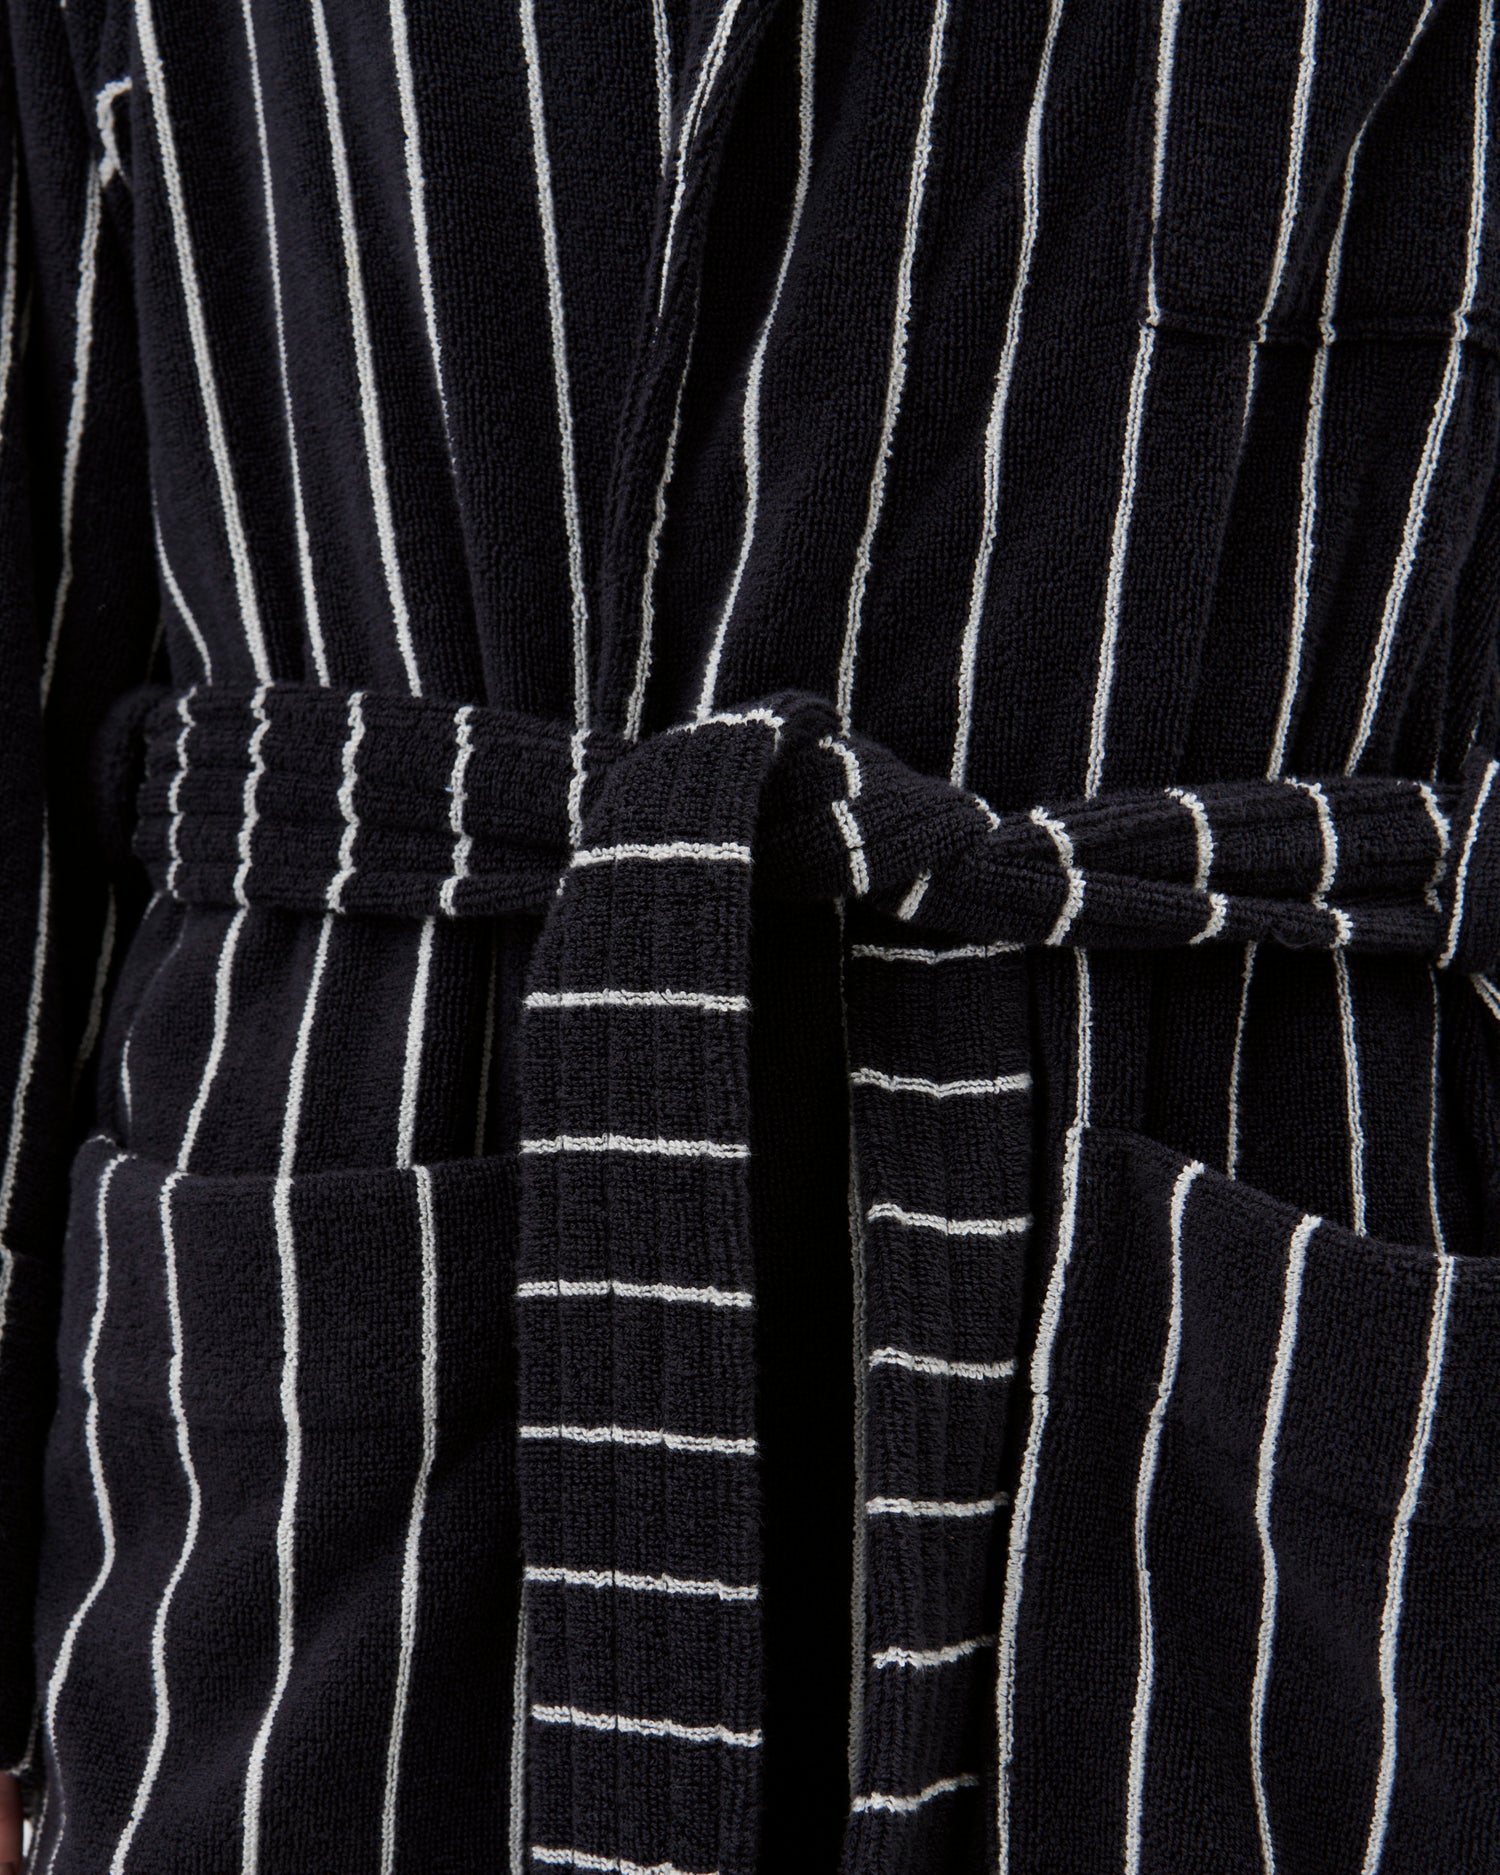 Terry classic bathrobe Antwerp, black w. white stripes, S